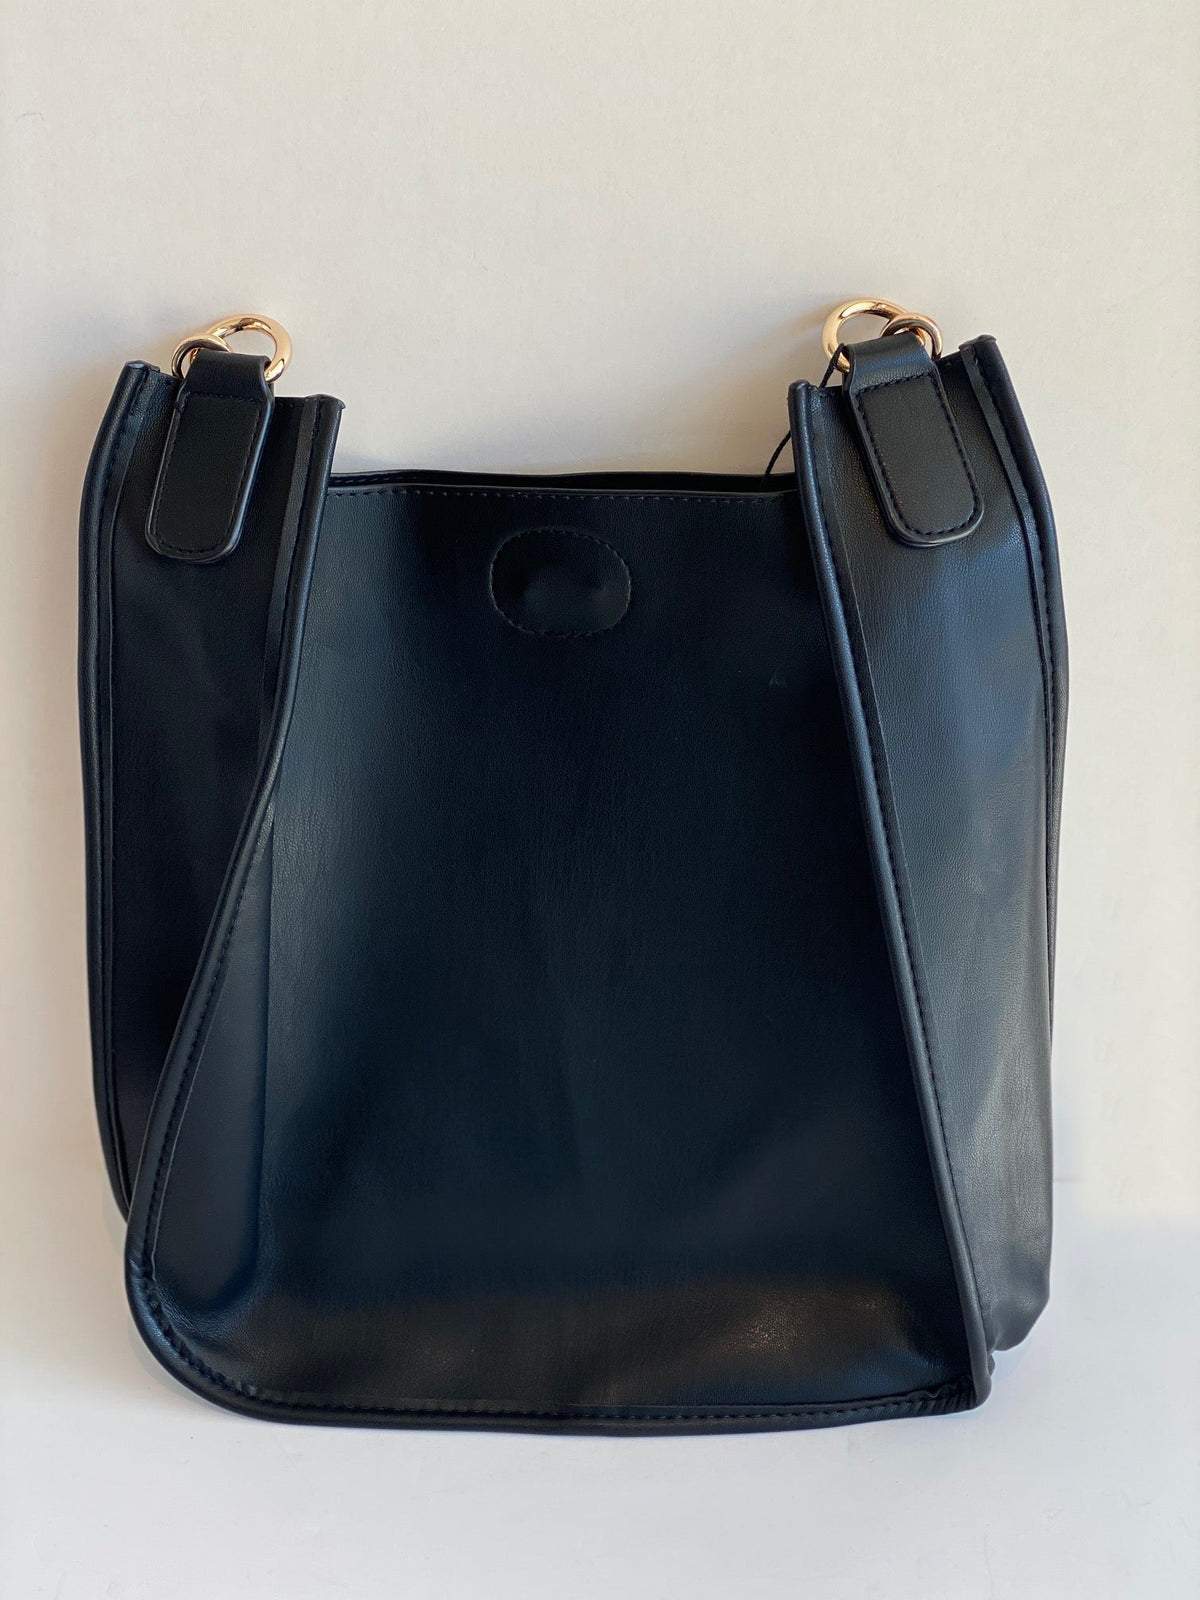 black ahdorned messenger bag